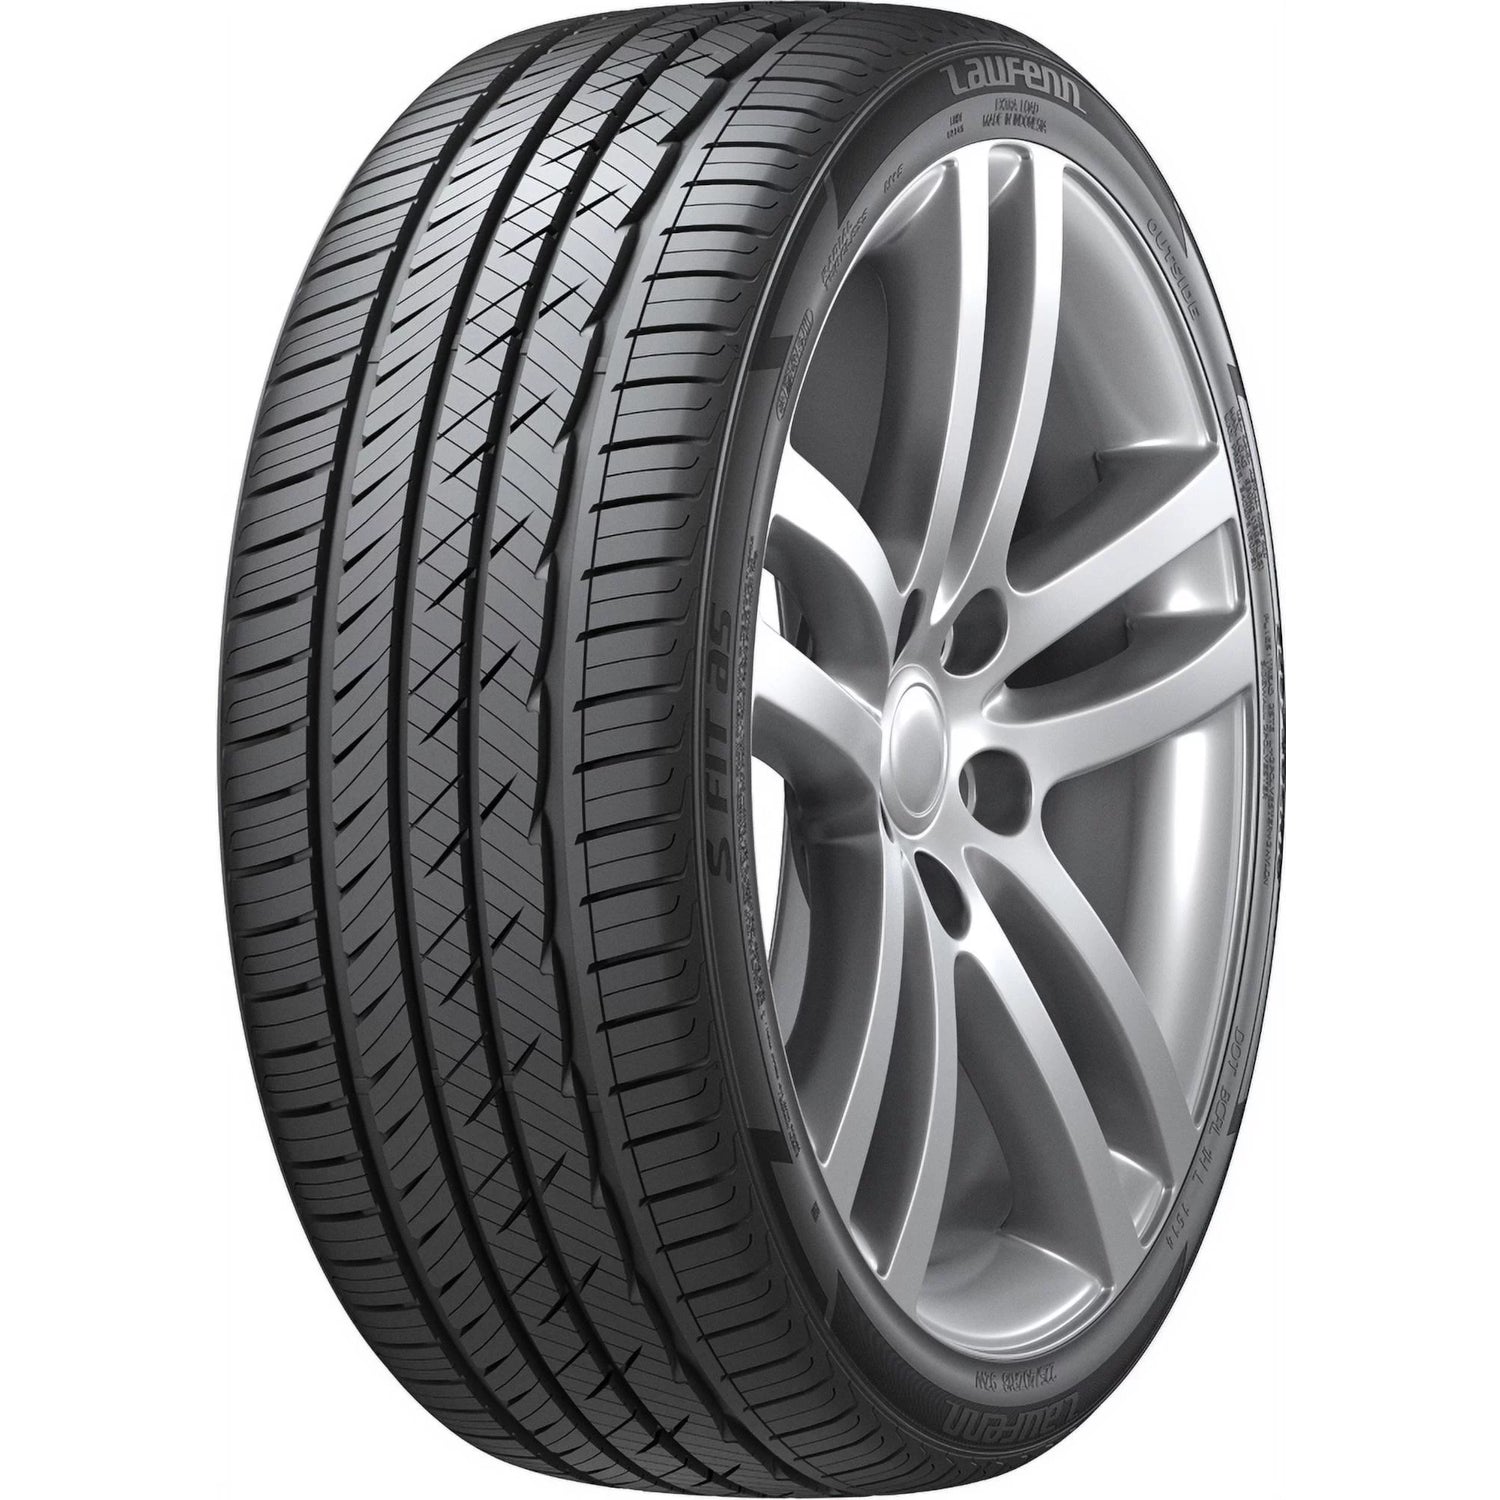 LAUFENN S FIT AS 275/55R19 (30.9X10.8R 19) Tires